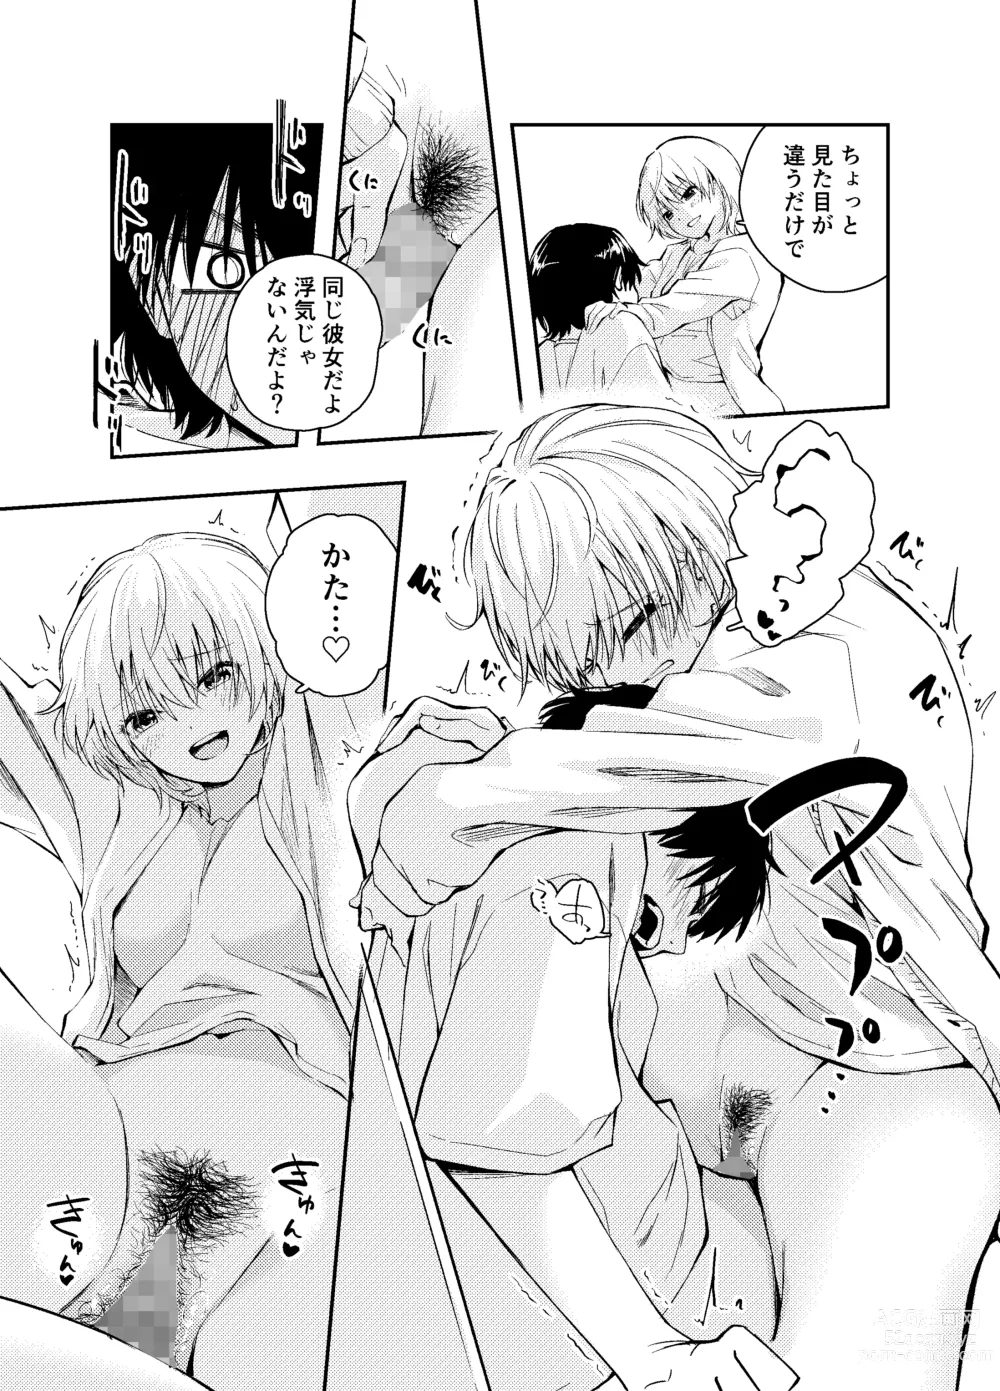 Page 29 of doujinshi Mukashi no Sugata ni Modotta Otto to no Sex wa Uwaki desu ka?